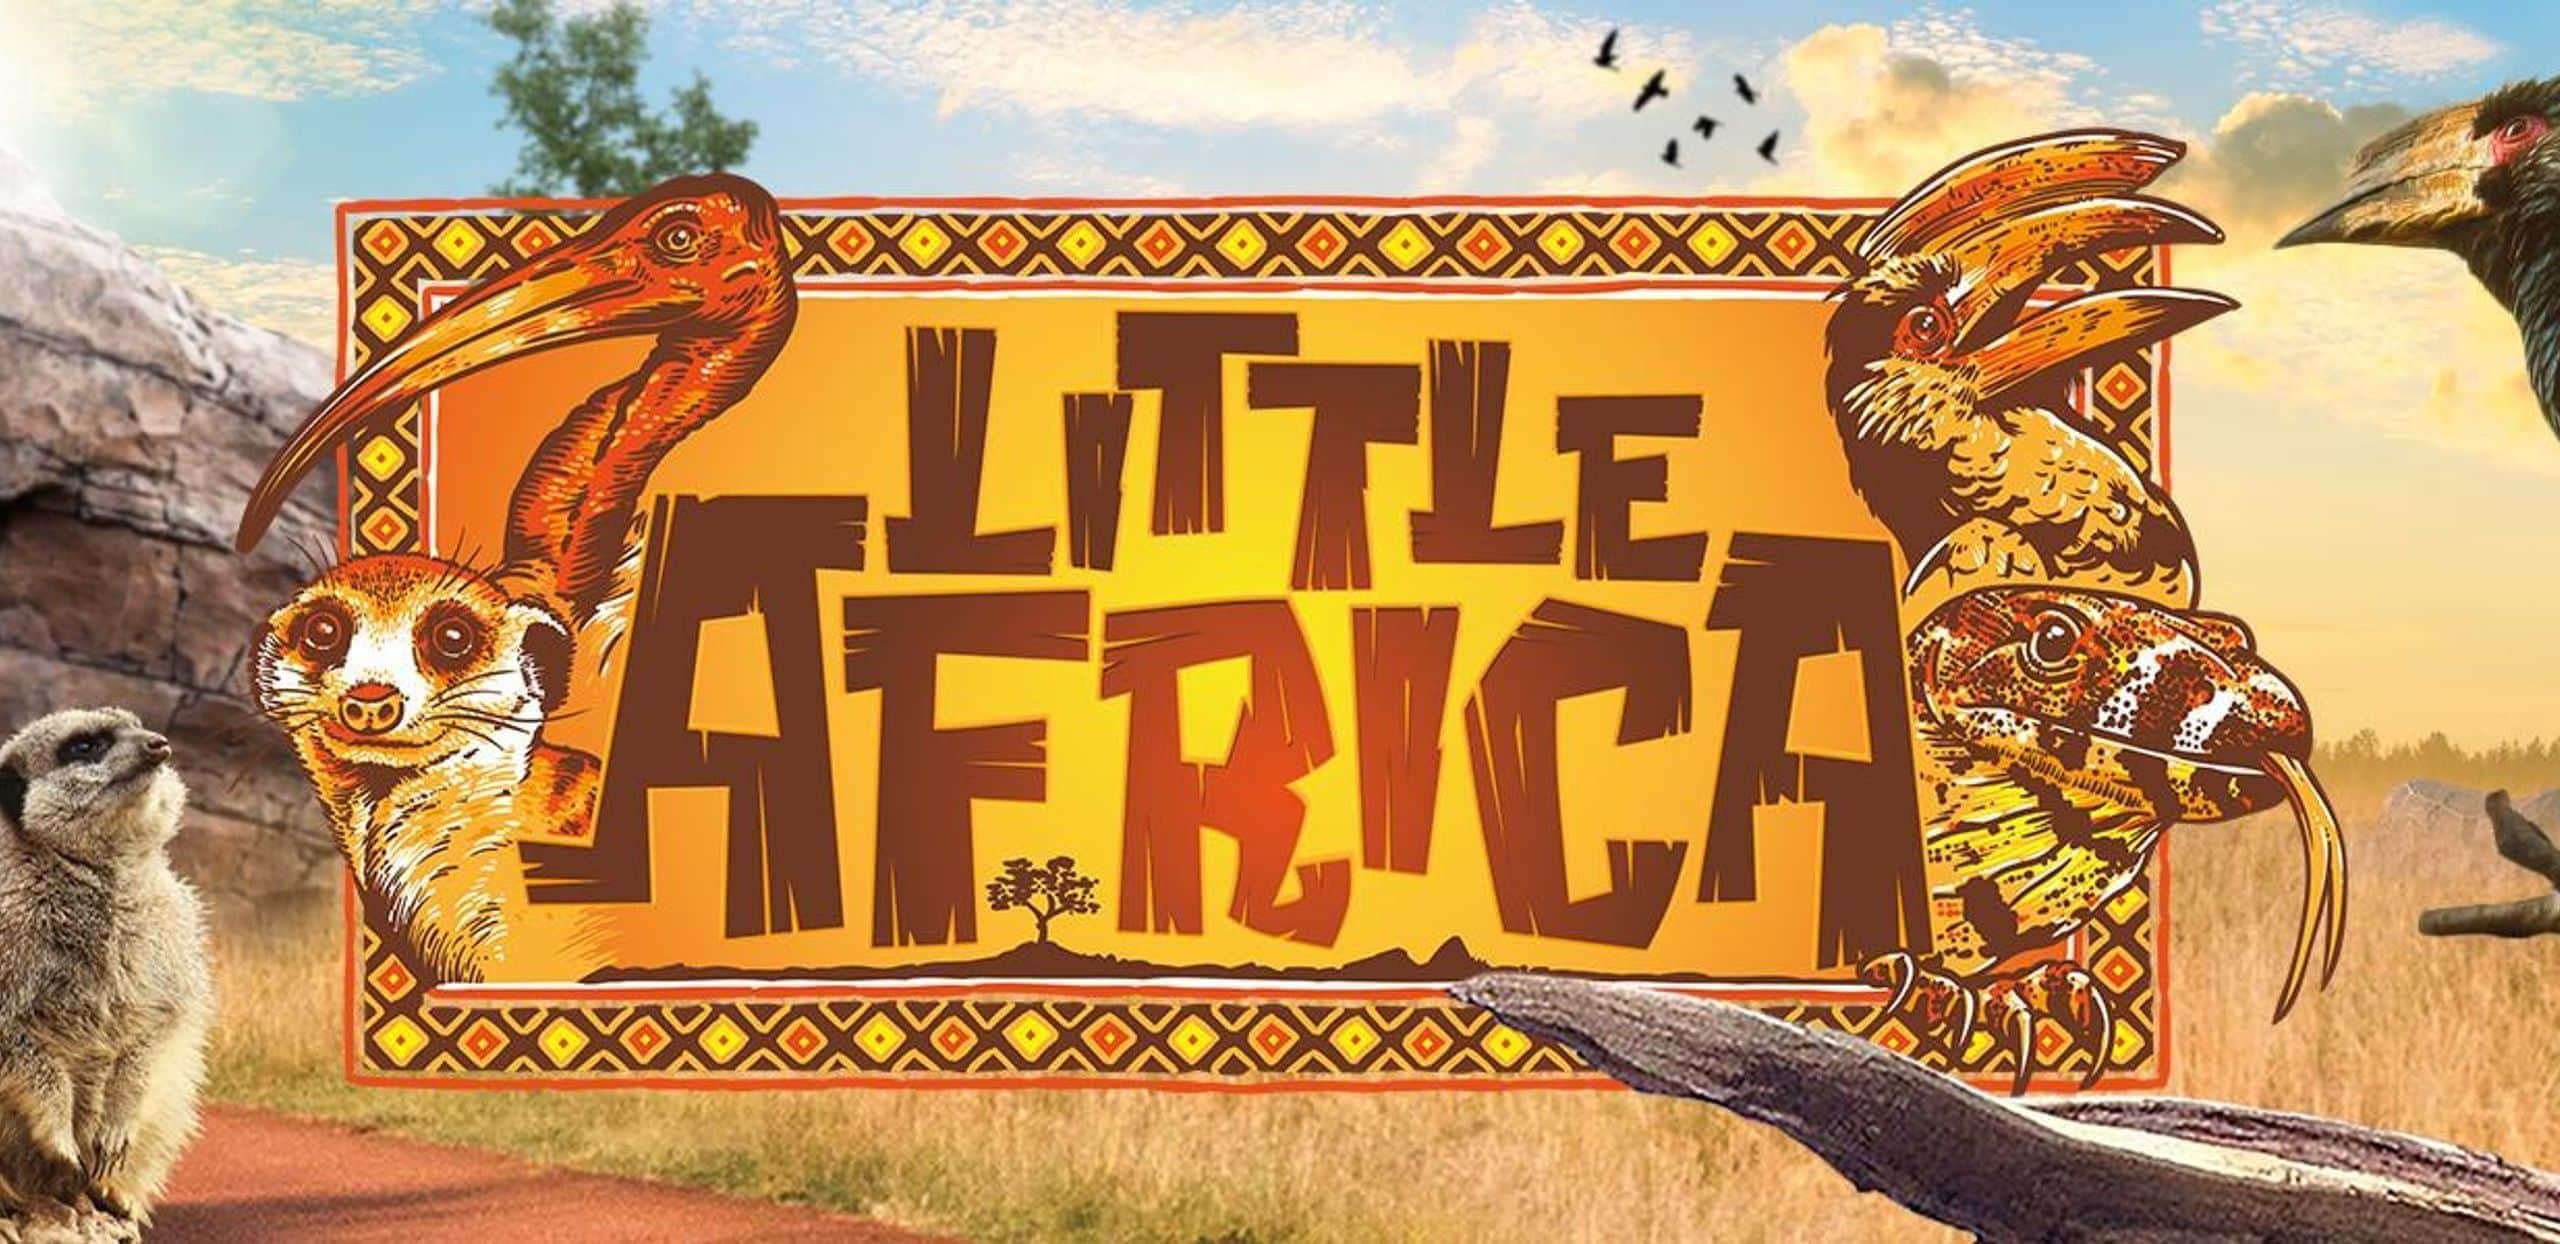 Little Africa banner